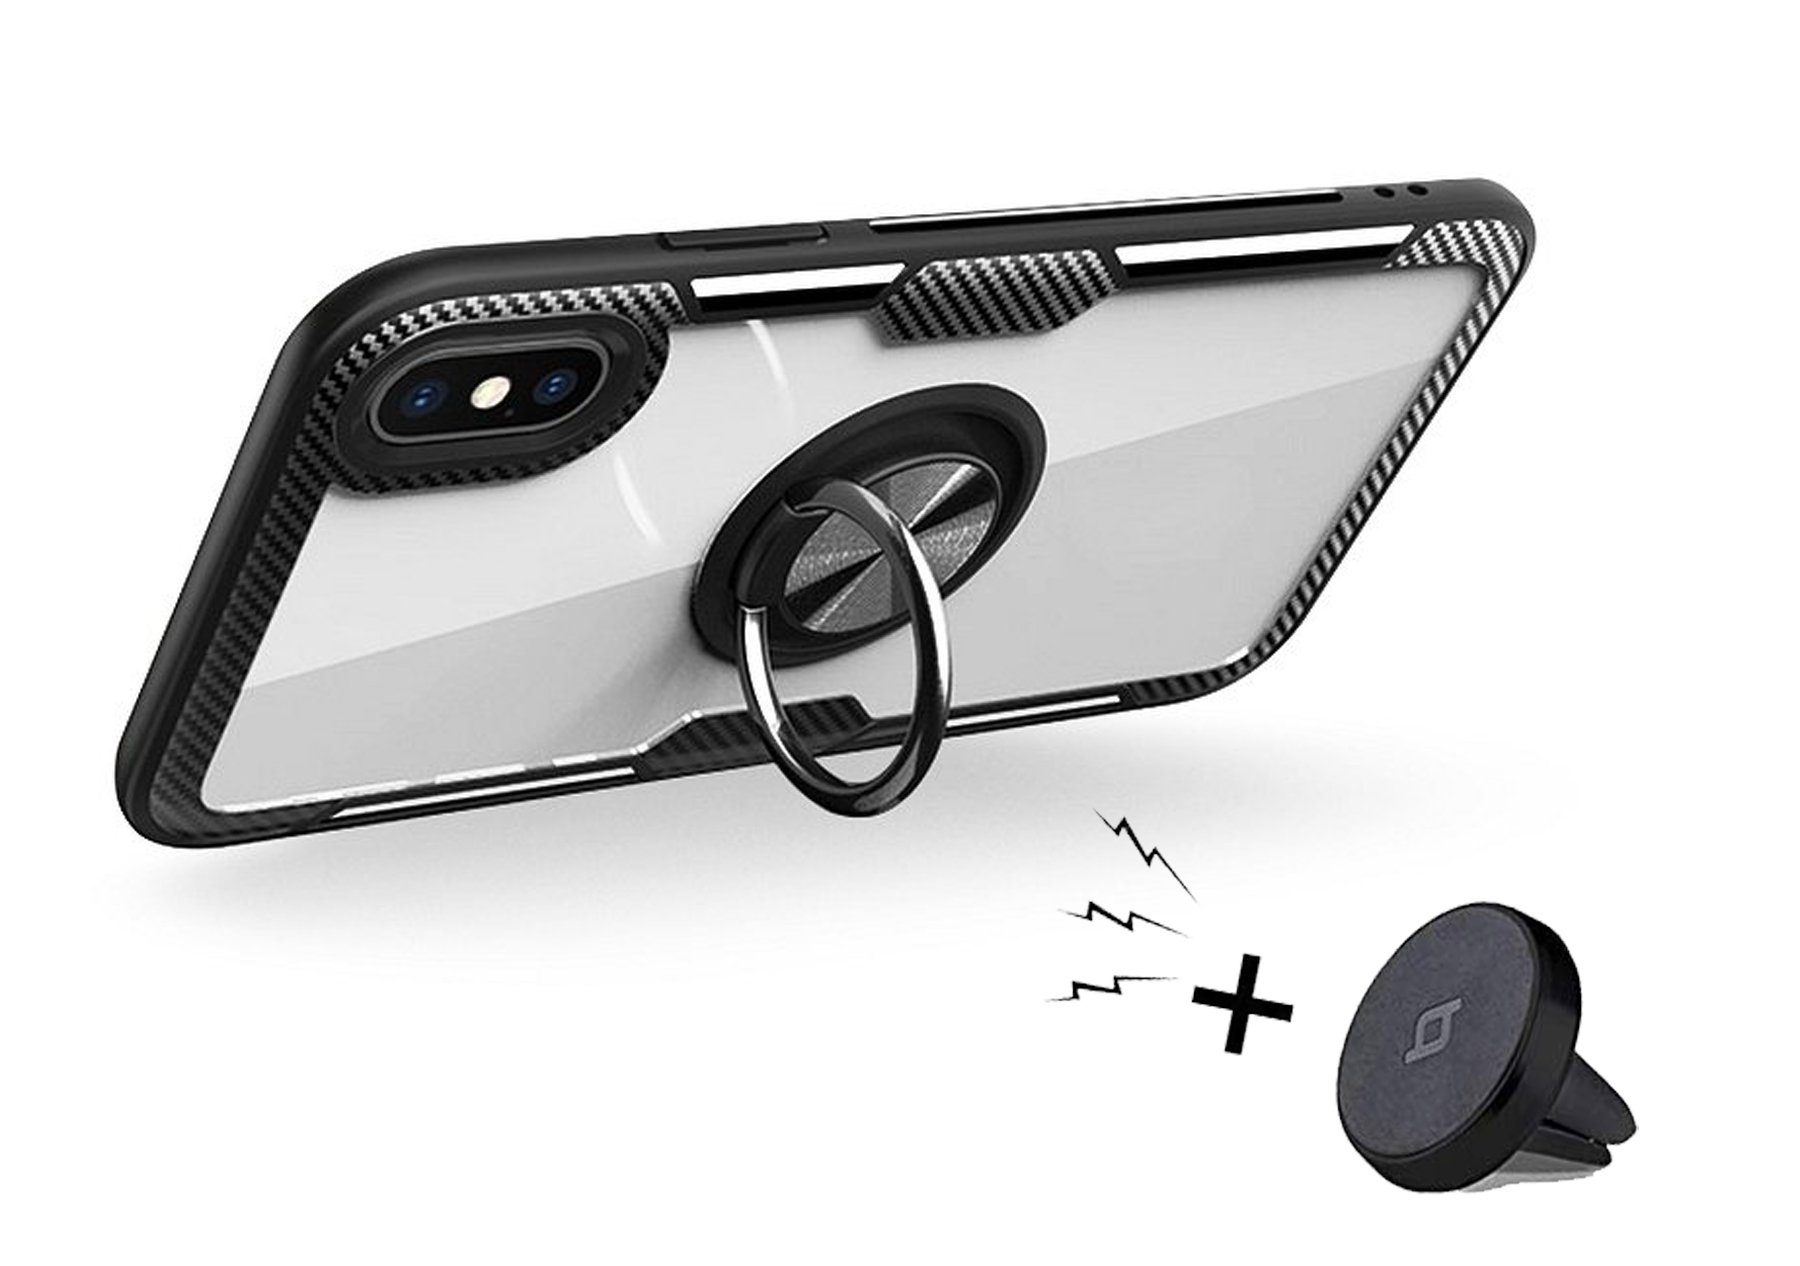 Für Elephone/Umi Handy Silikon Schutzhülle Tasche Hülle Cover Back Case Schale 